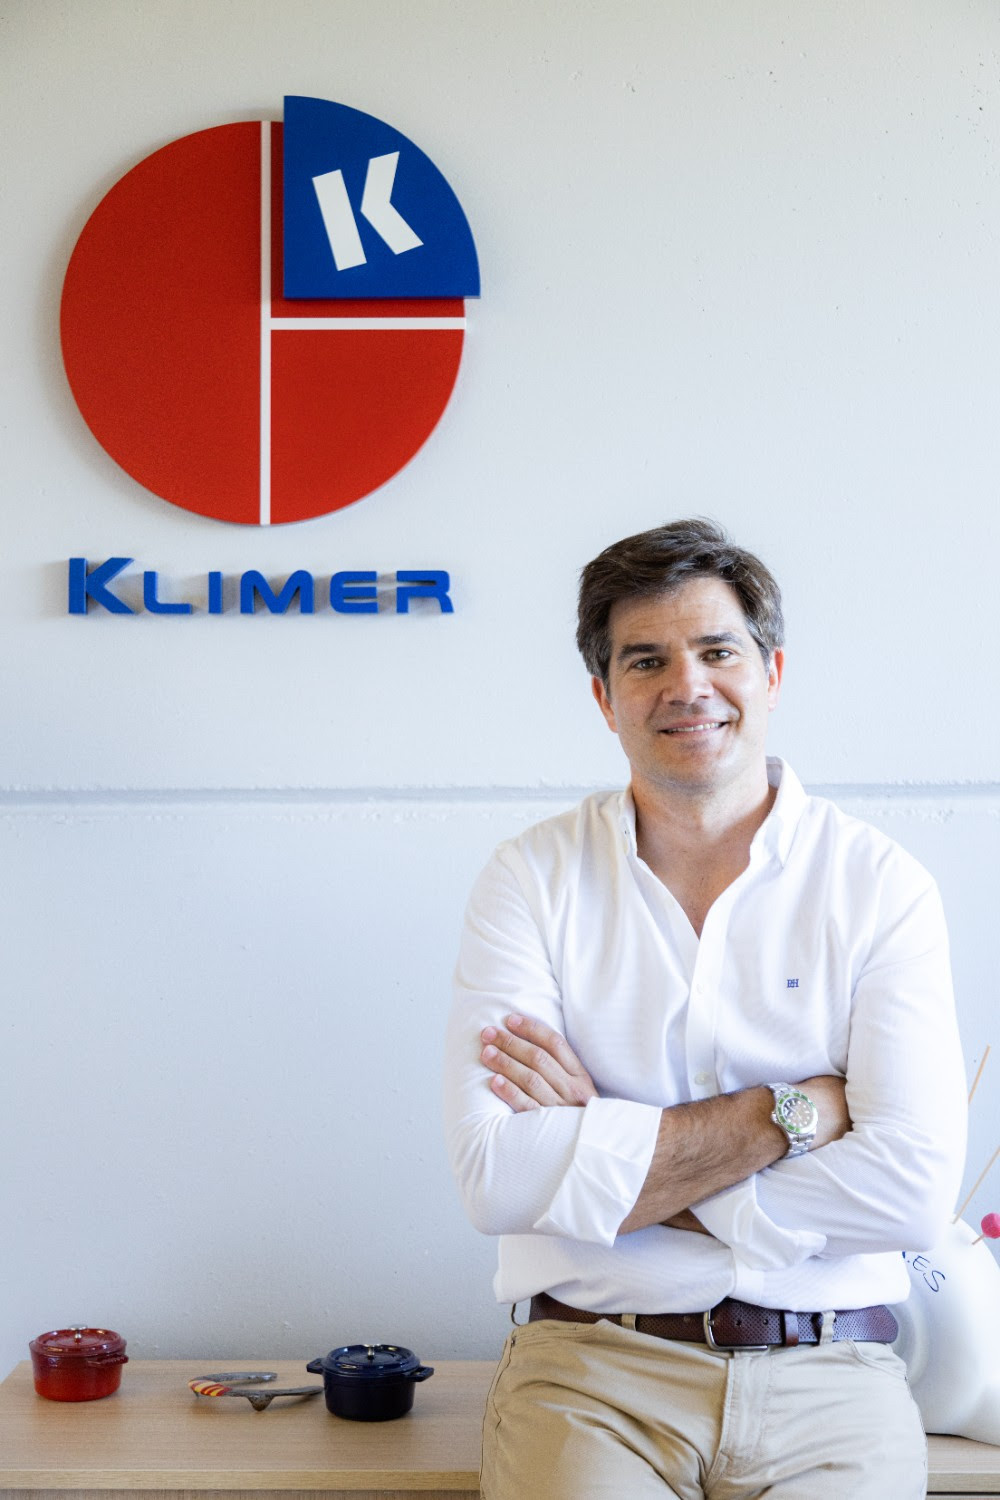 Klimer celebra su 20º aniversario liderando la distribución de equipamiento para hostelería y alta restauración